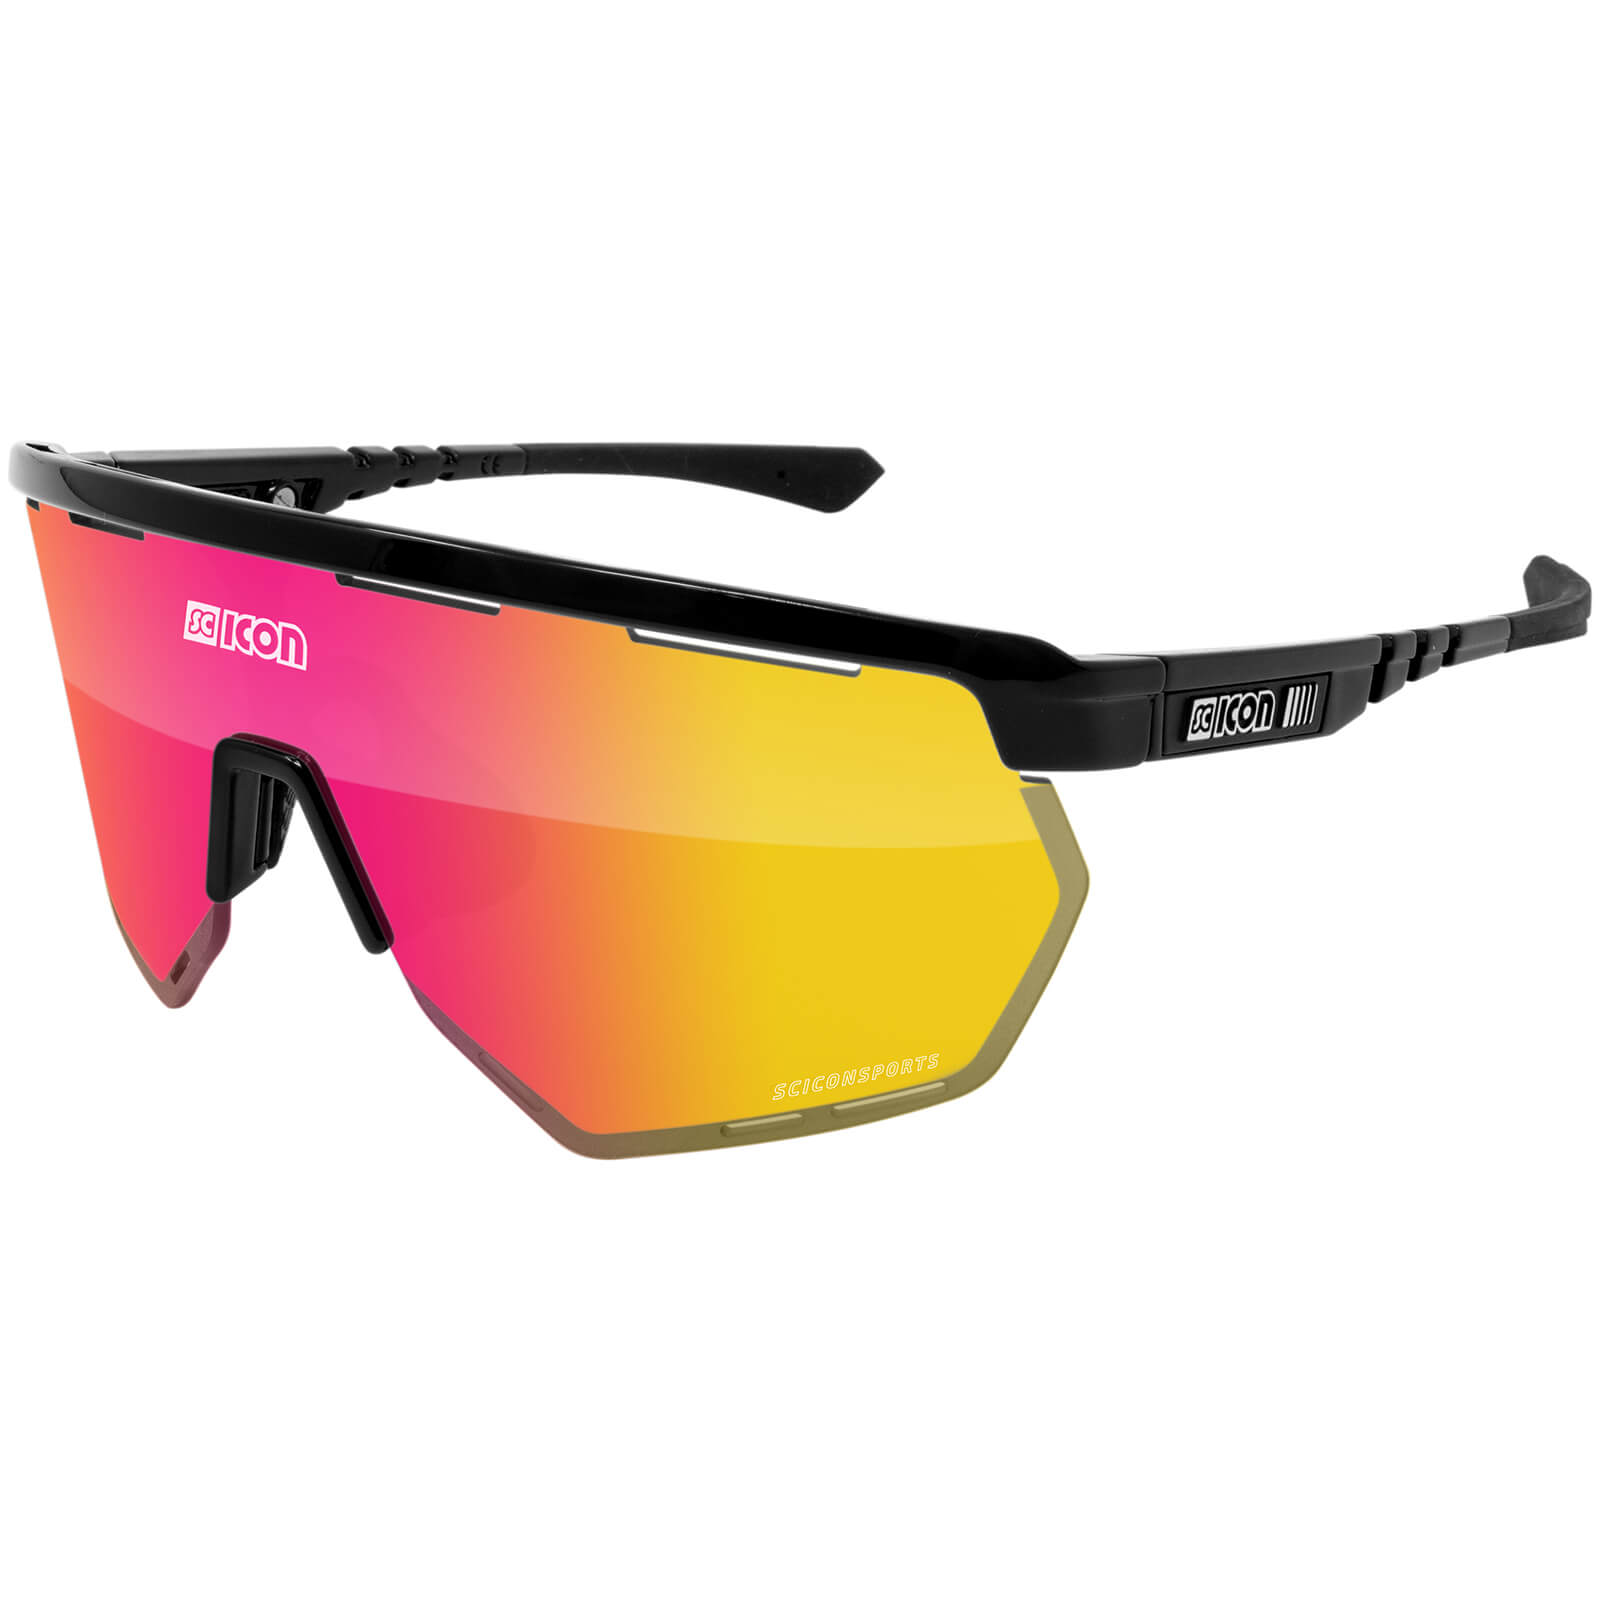 Scicon Aerowing Road Sunglasses - Black Gloss/SCNPP Multimirror Red